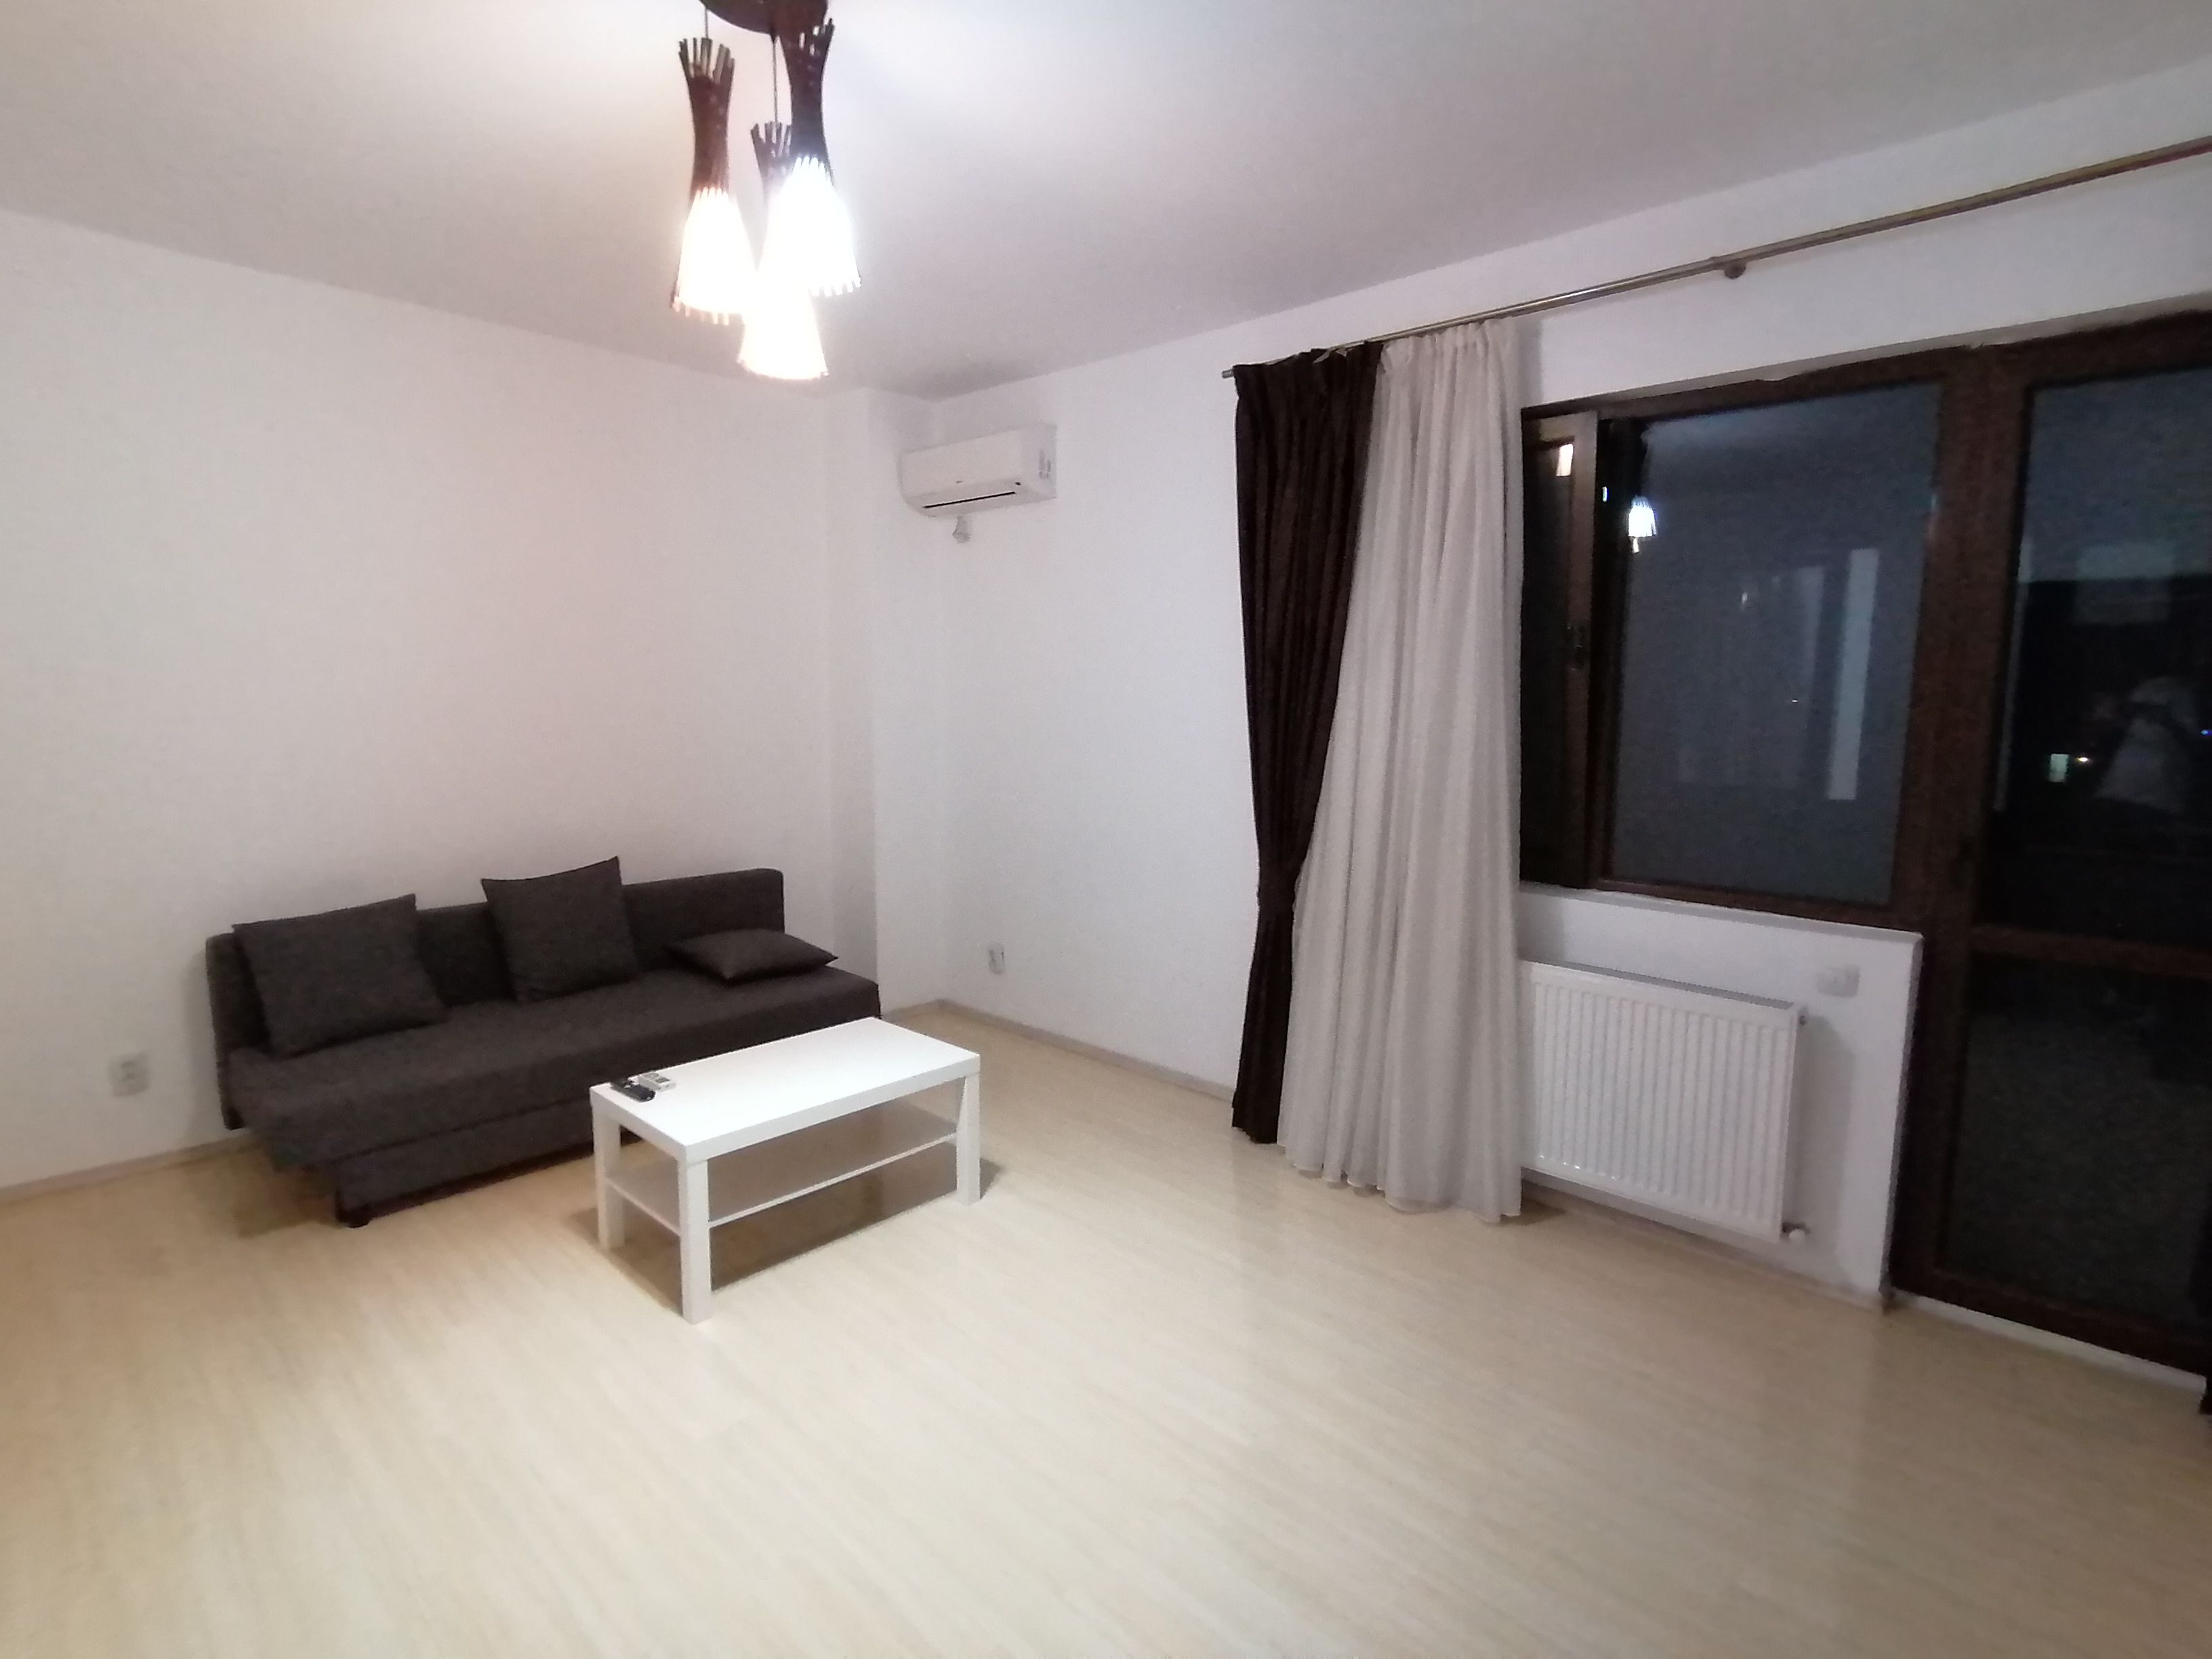 Apartament cu 2 camere 63,90 mp - Fundeni